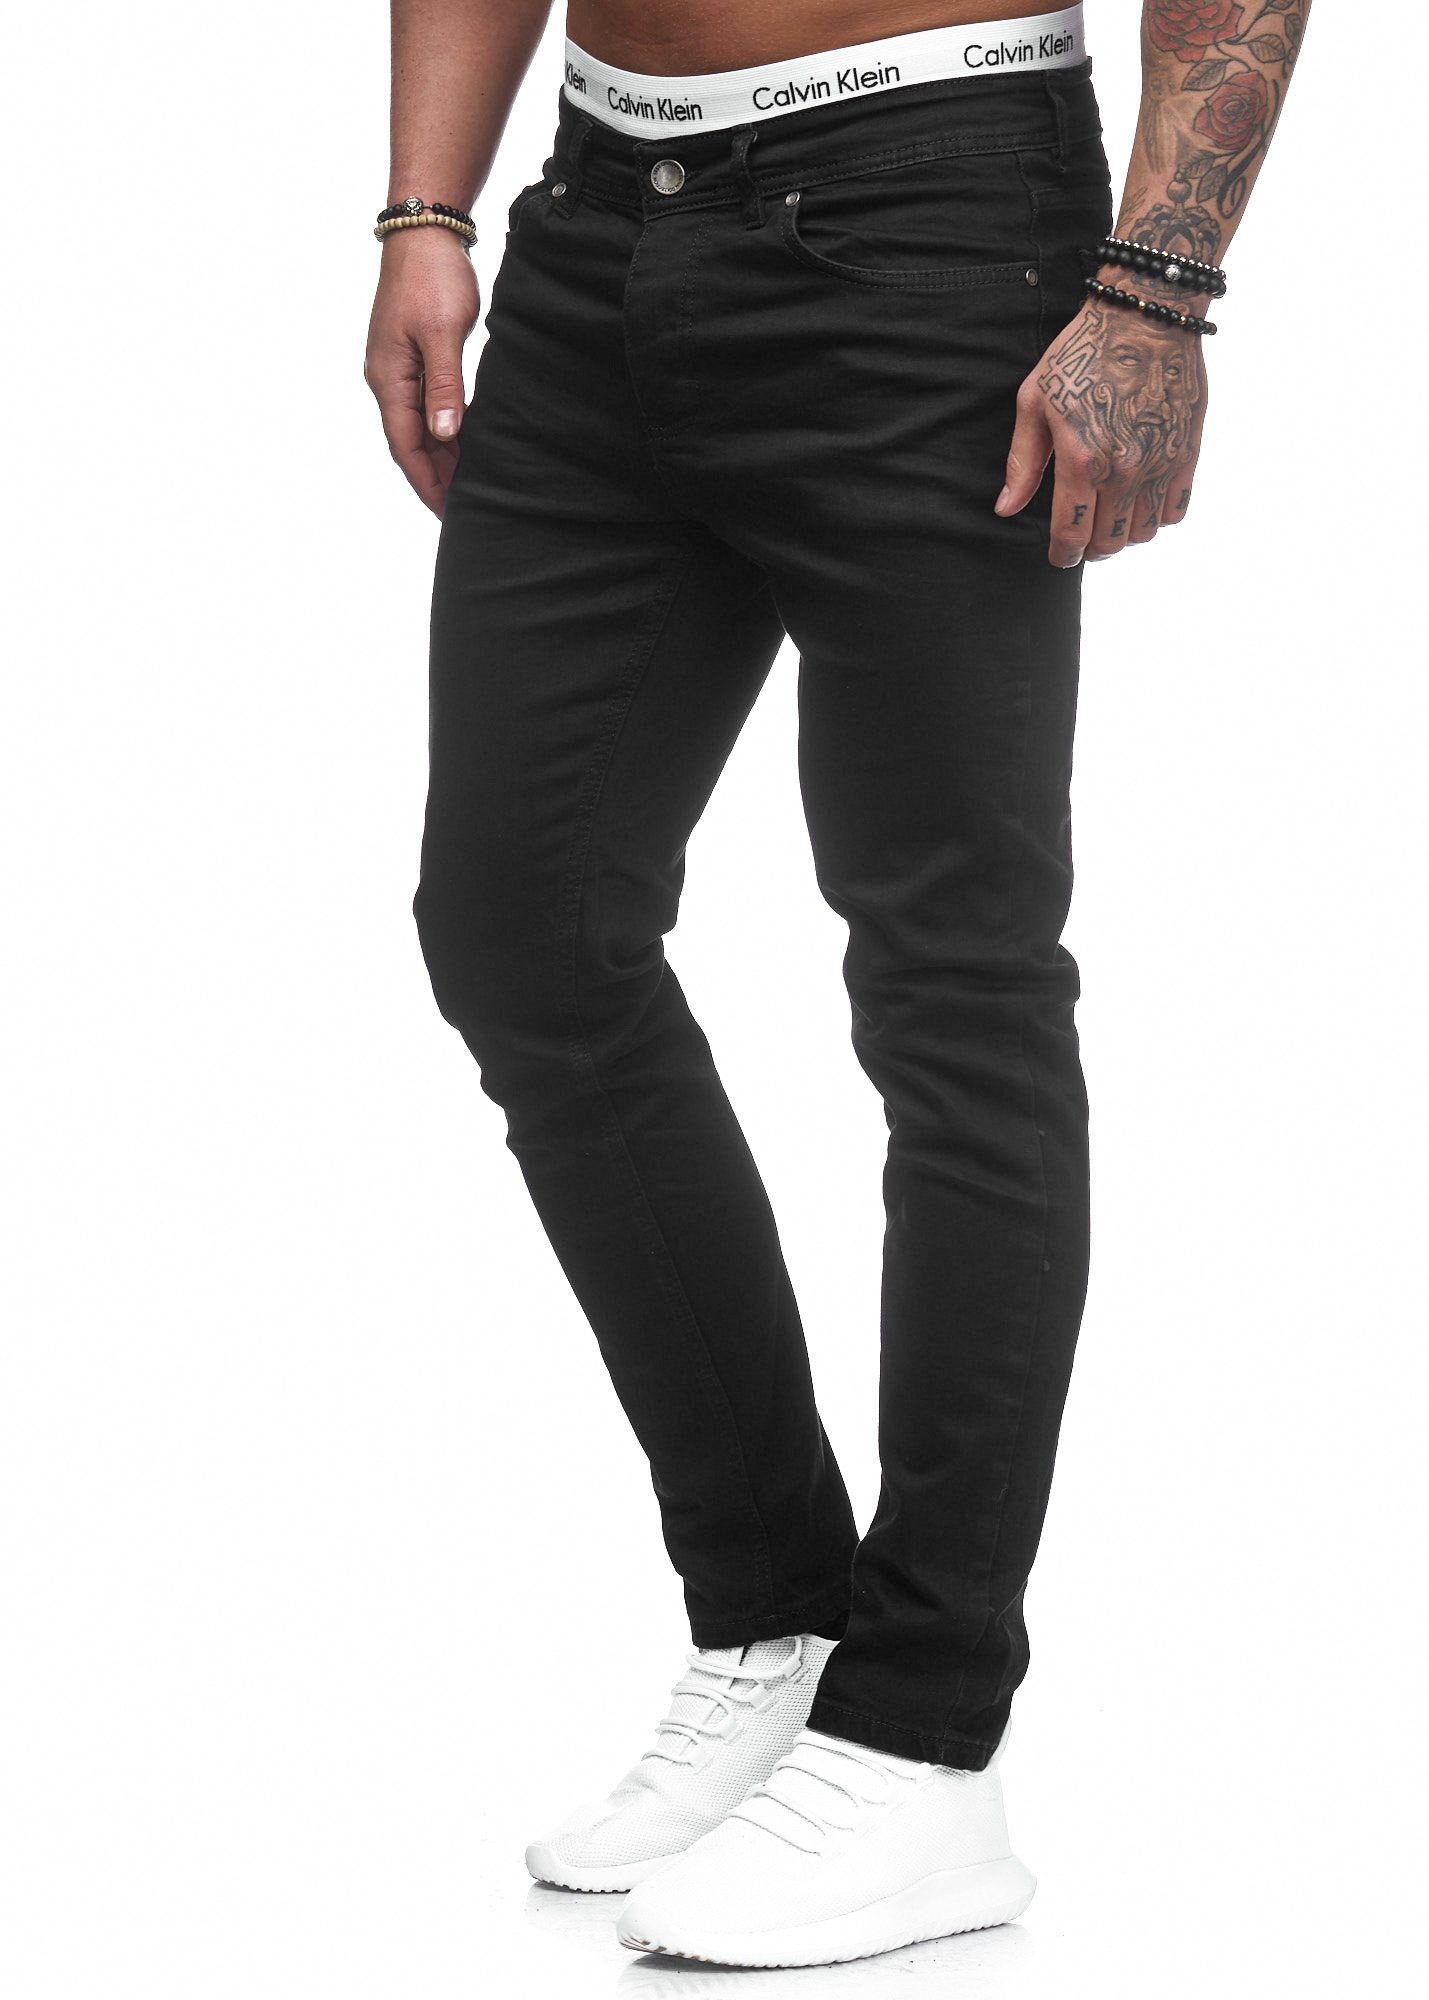 Jeanshose Jeans Fit Herren Basic Designer Code47 Slim Schwarz Slim-fit-Jeans 5078 Stretch Chino Hose